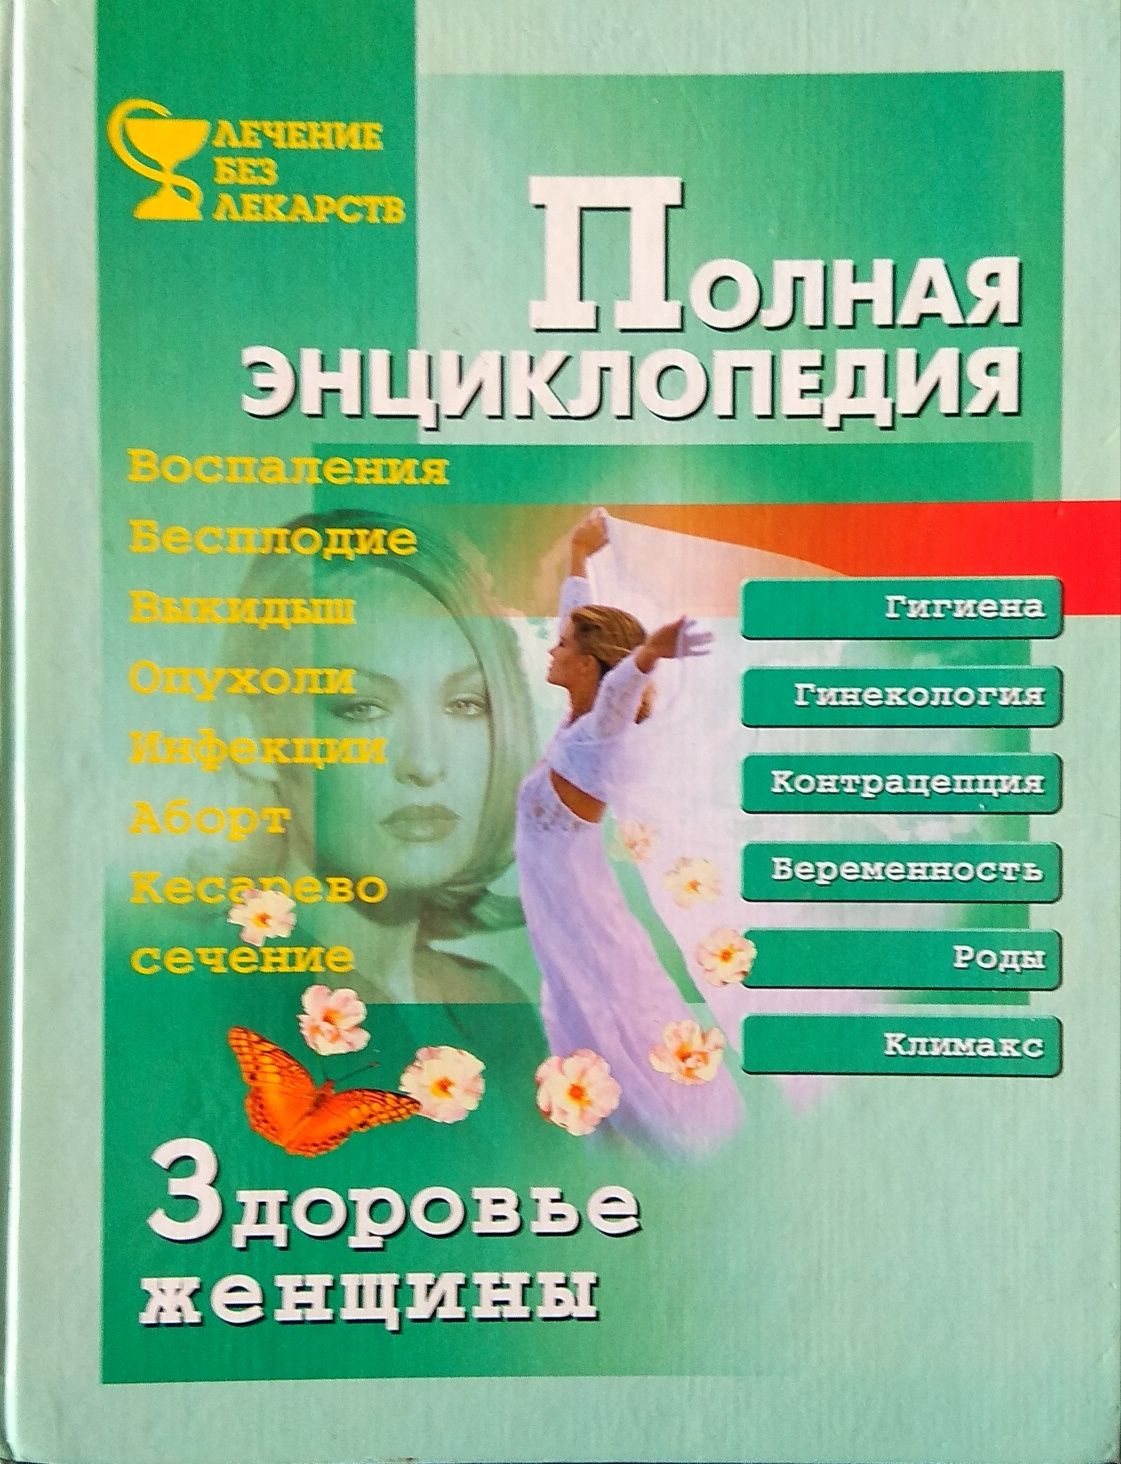 Полная энциклопедия. Здоровья женщины. Санк-Петербург, 2001 г.